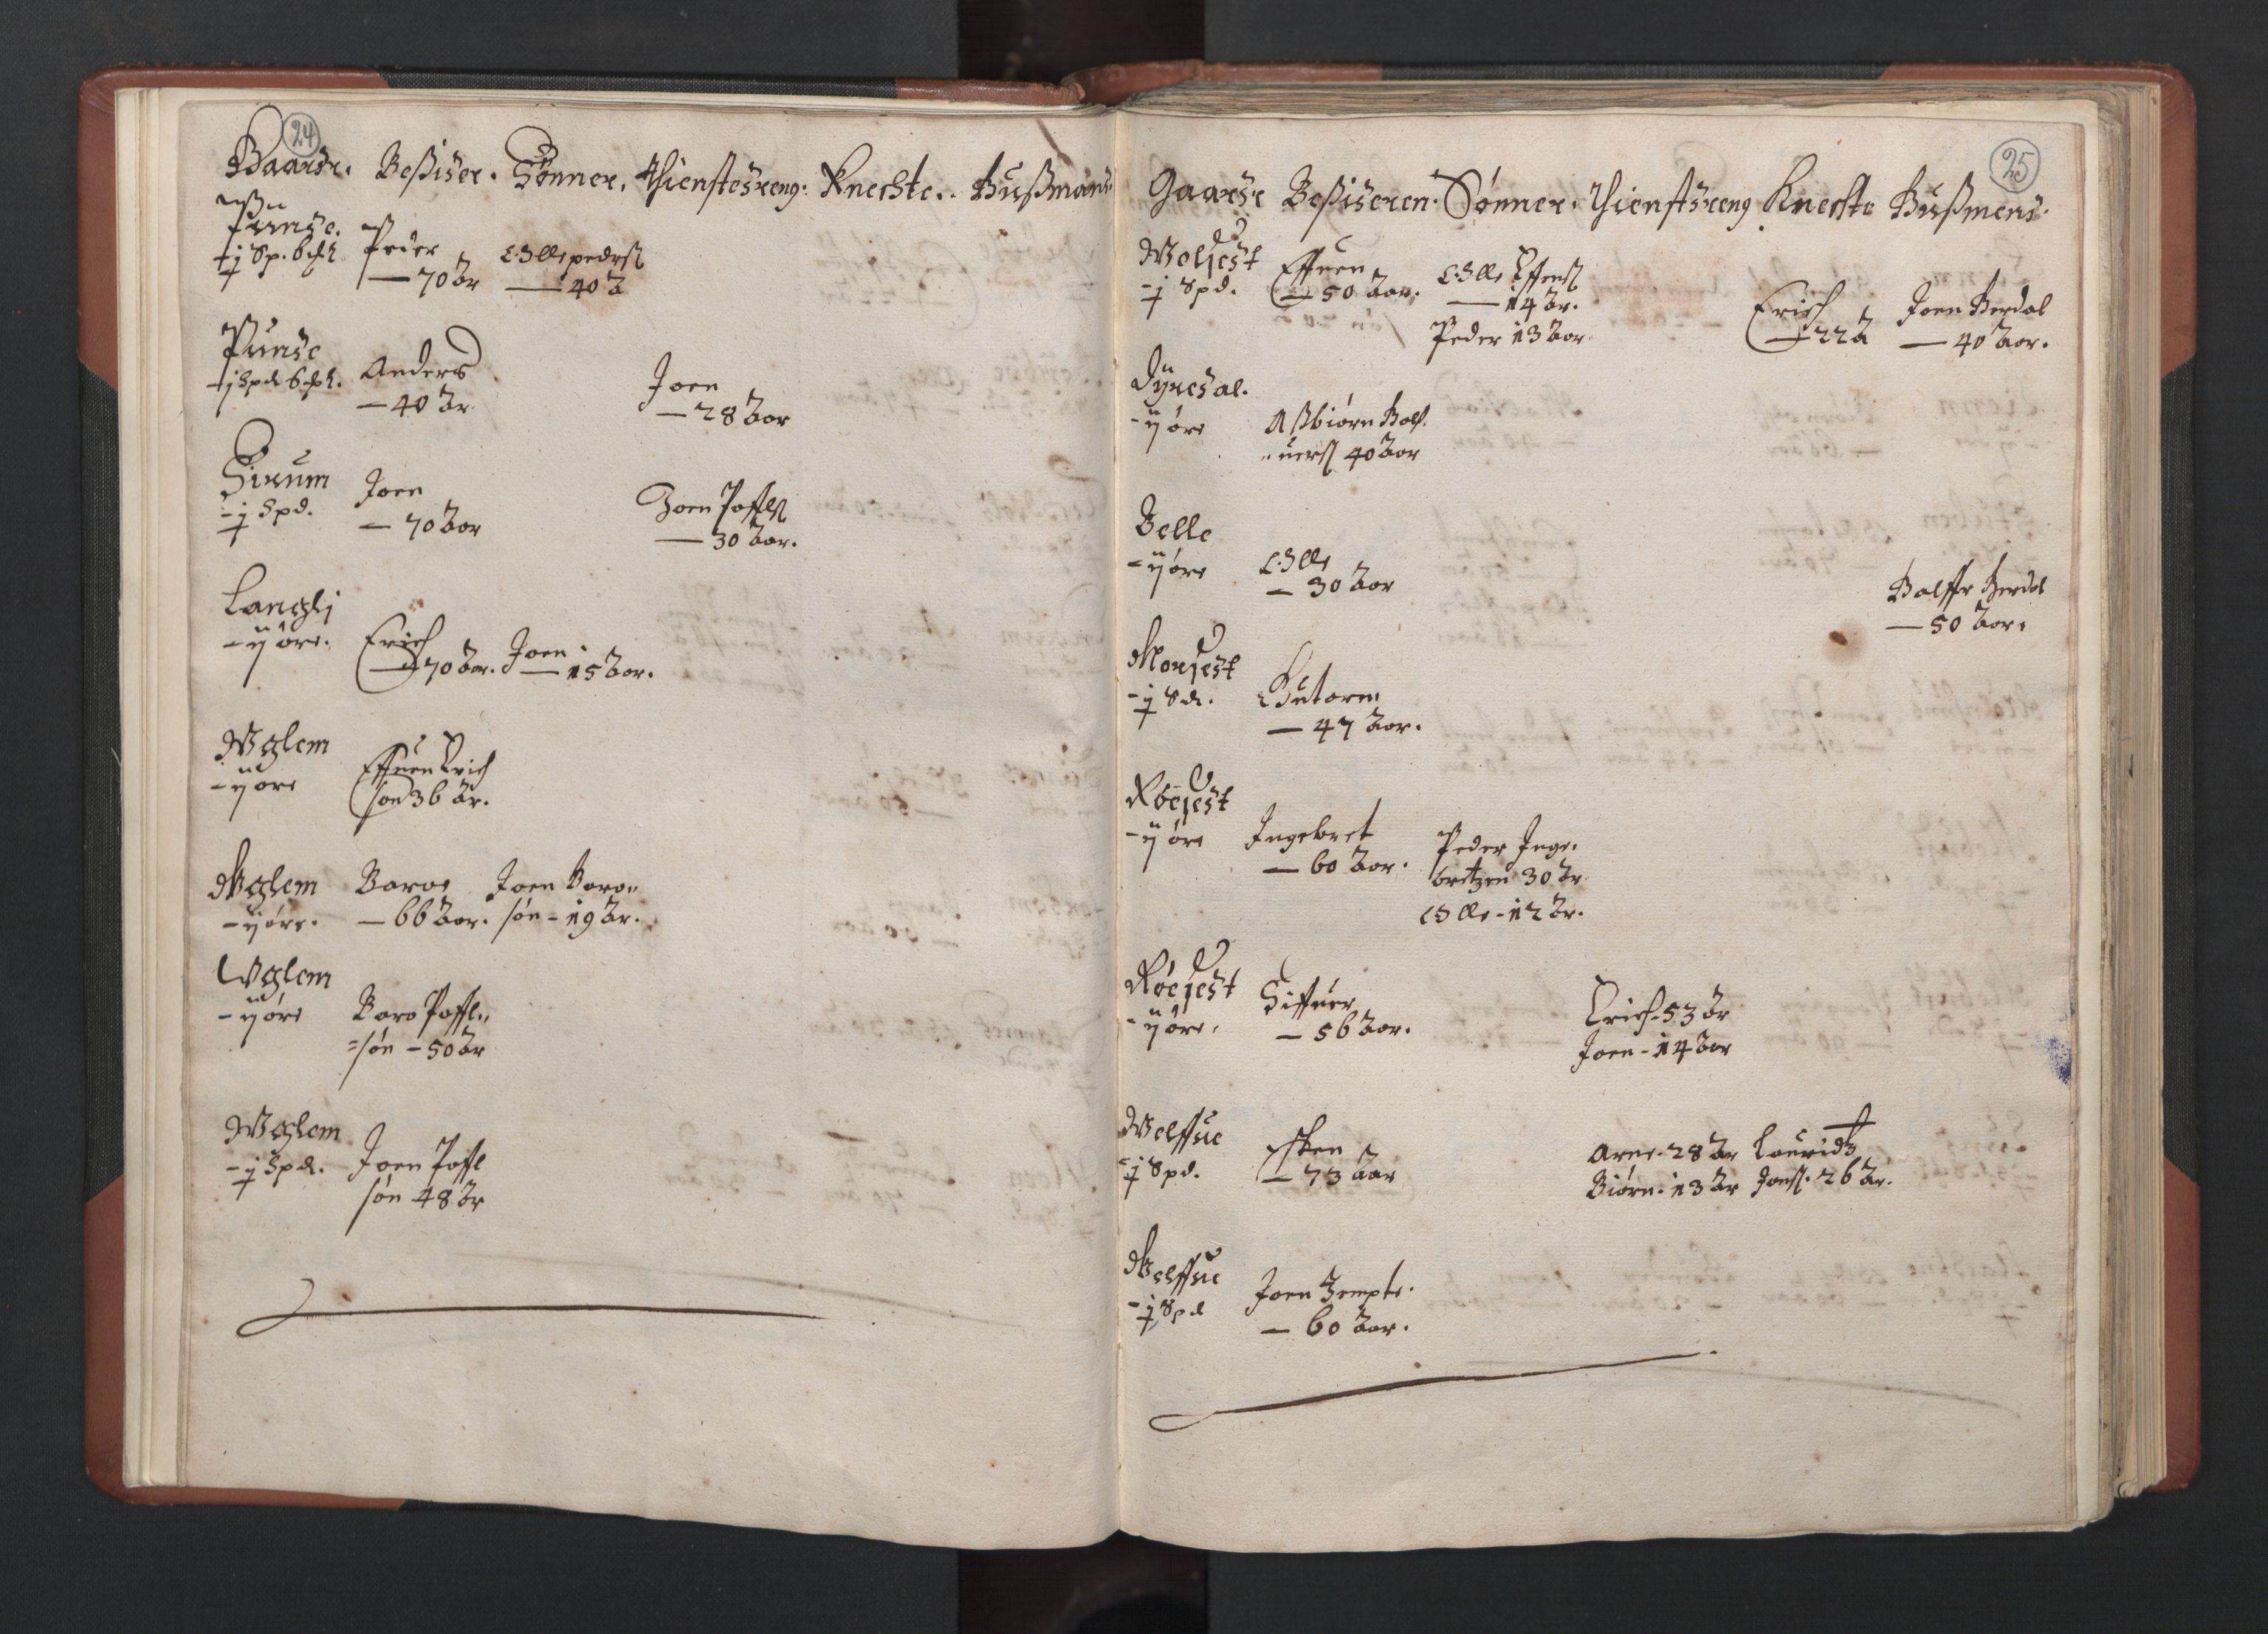 RA, Fogdenes og sorenskrivernes manntall 1664-1666, nr. 19: Fosen fogderi, Inderøy fogderi, Selbu fogderi, Namdal fogderi og Stjørdal fogderi, 1664-1665, s. 24-25